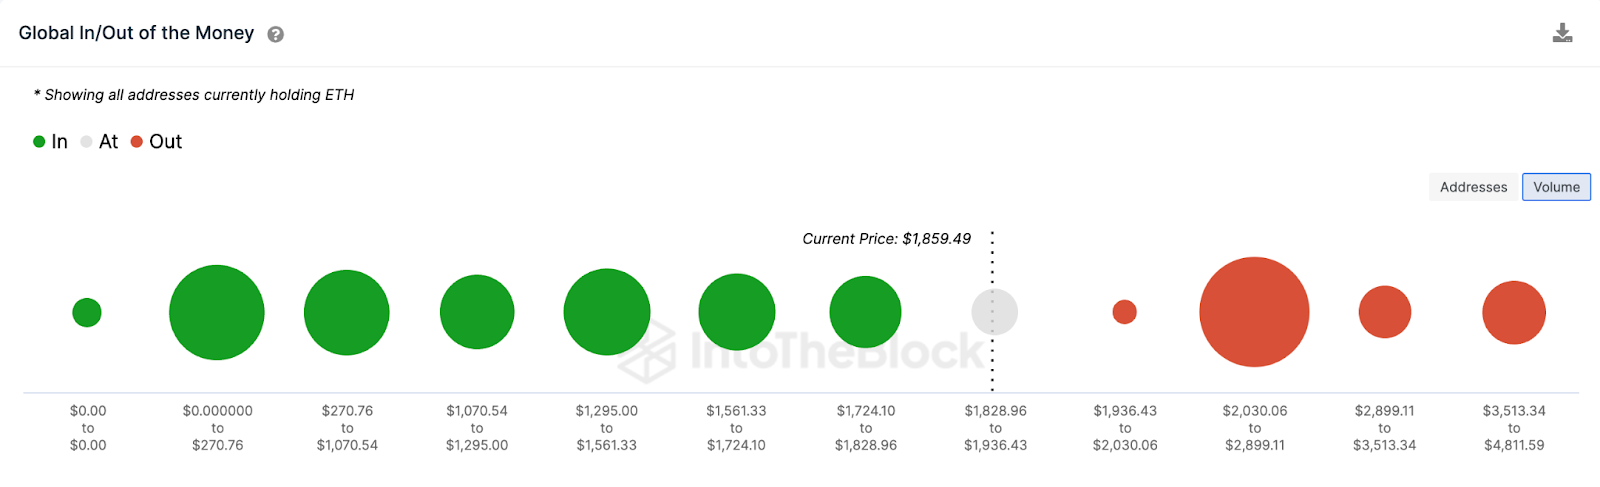 Gráfico global de entrada/salida de dinero de Ethereum (ETH), abril de 2023. Fuente: IntoTheBlock